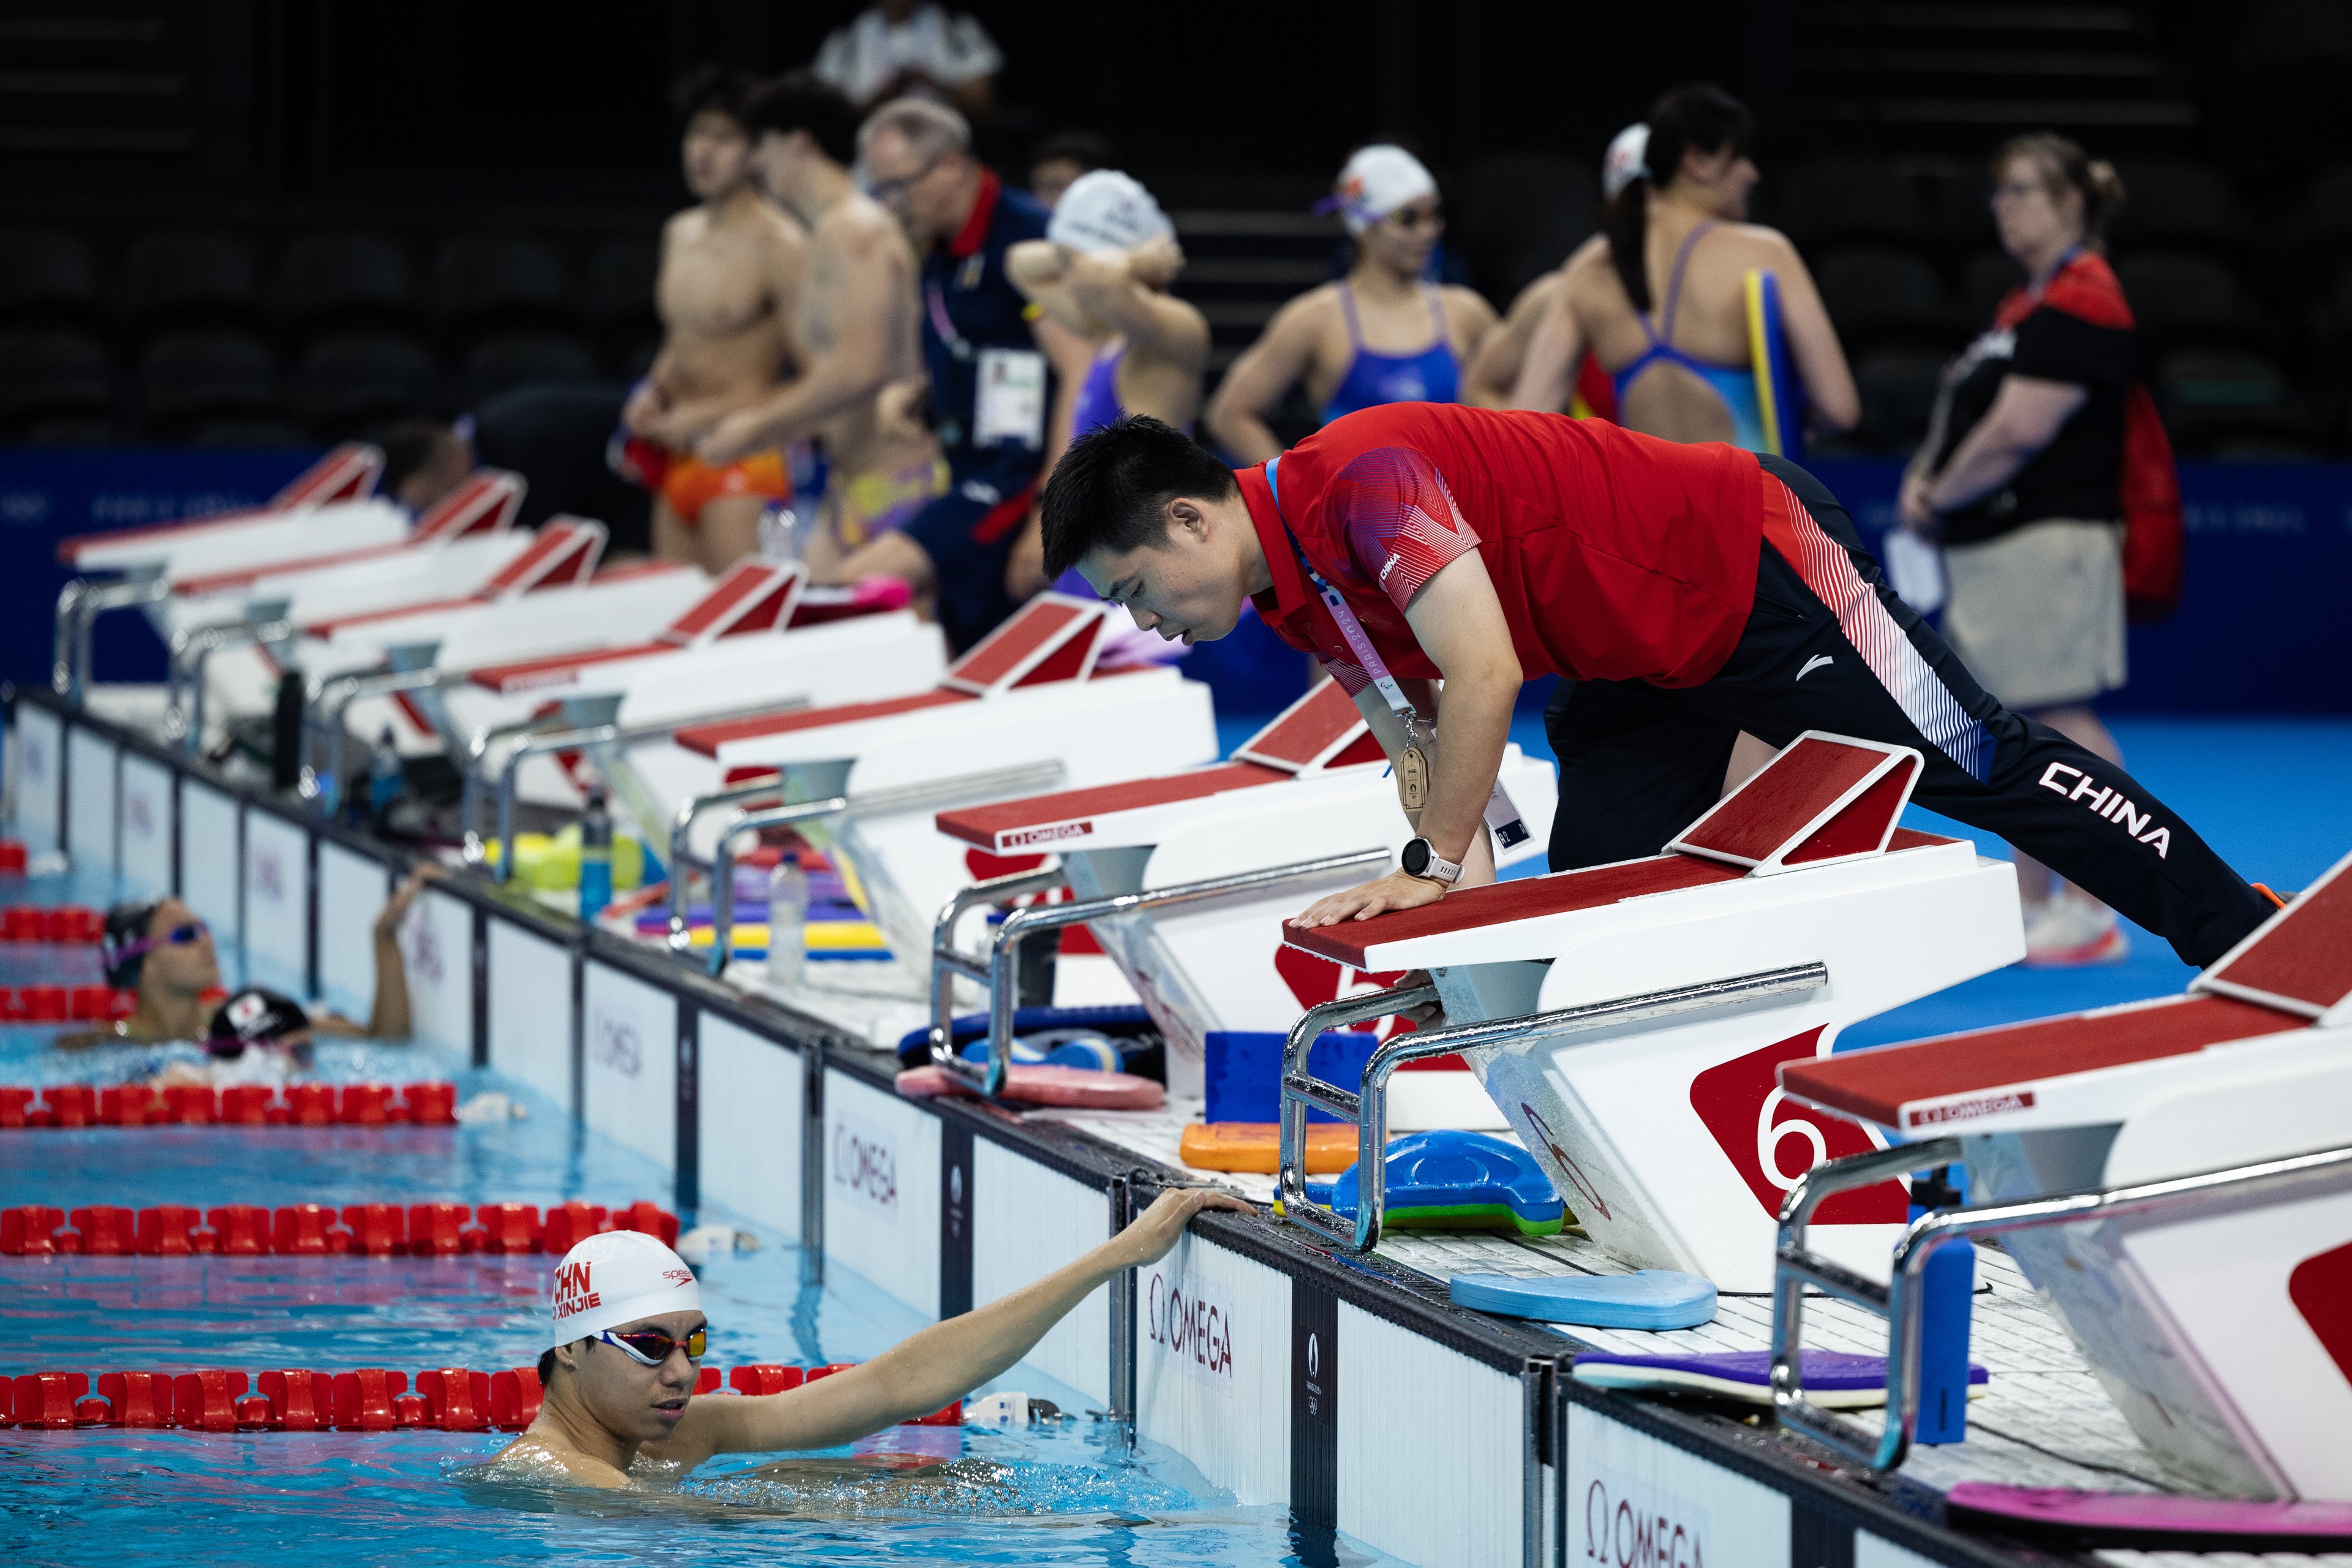 O nadador Ji Xinjie da equipe China participa de uma sessão de treinamento na Arena La Defense antes dos Jogos Olímpicos de Paris 2024 em 24 de julho de 2024 em Paris, França. As Olimpíadas de Paris serão realizadas de 26 de julho a 11 de agosto.